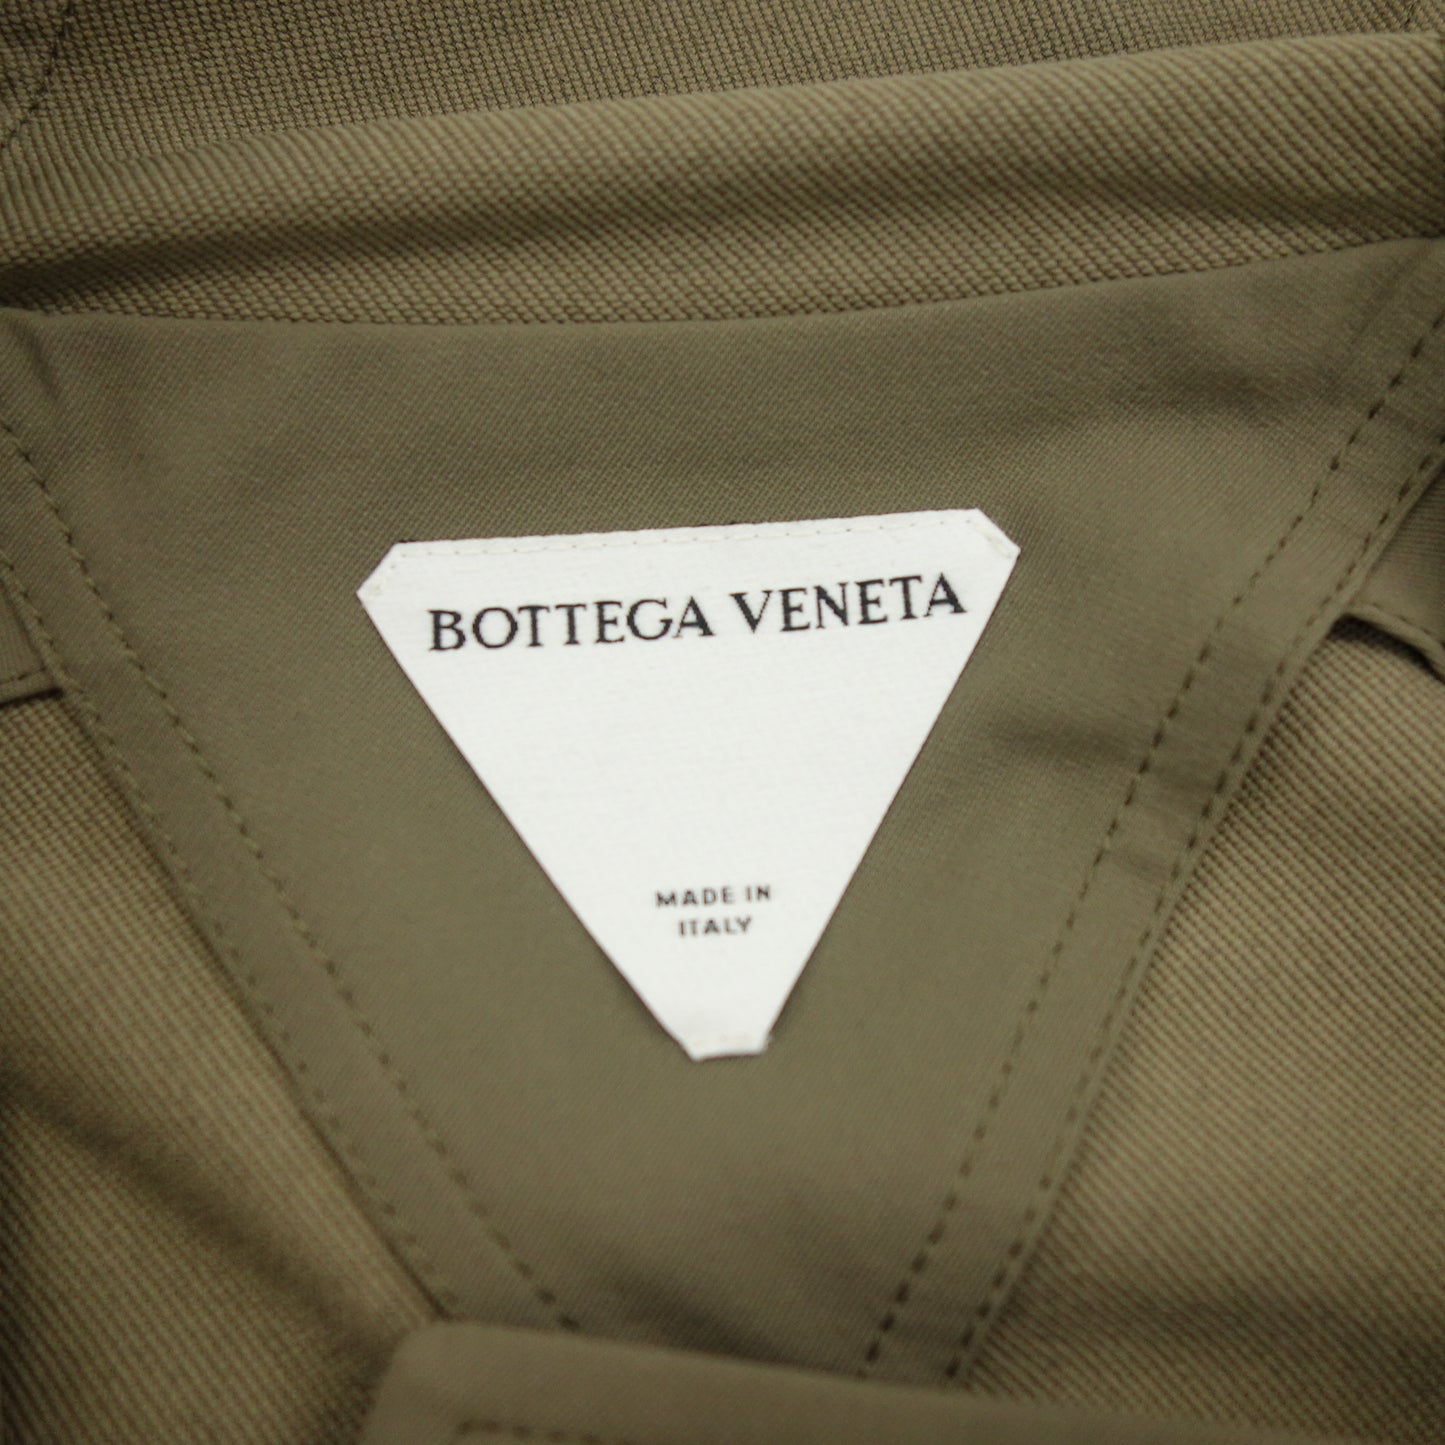 状况良好 ◆ Bottega Veneta 带帽拉链夹克 银色五金配件 男士尺码 50 米色 BOTTEGA VENETA [AFB5] 